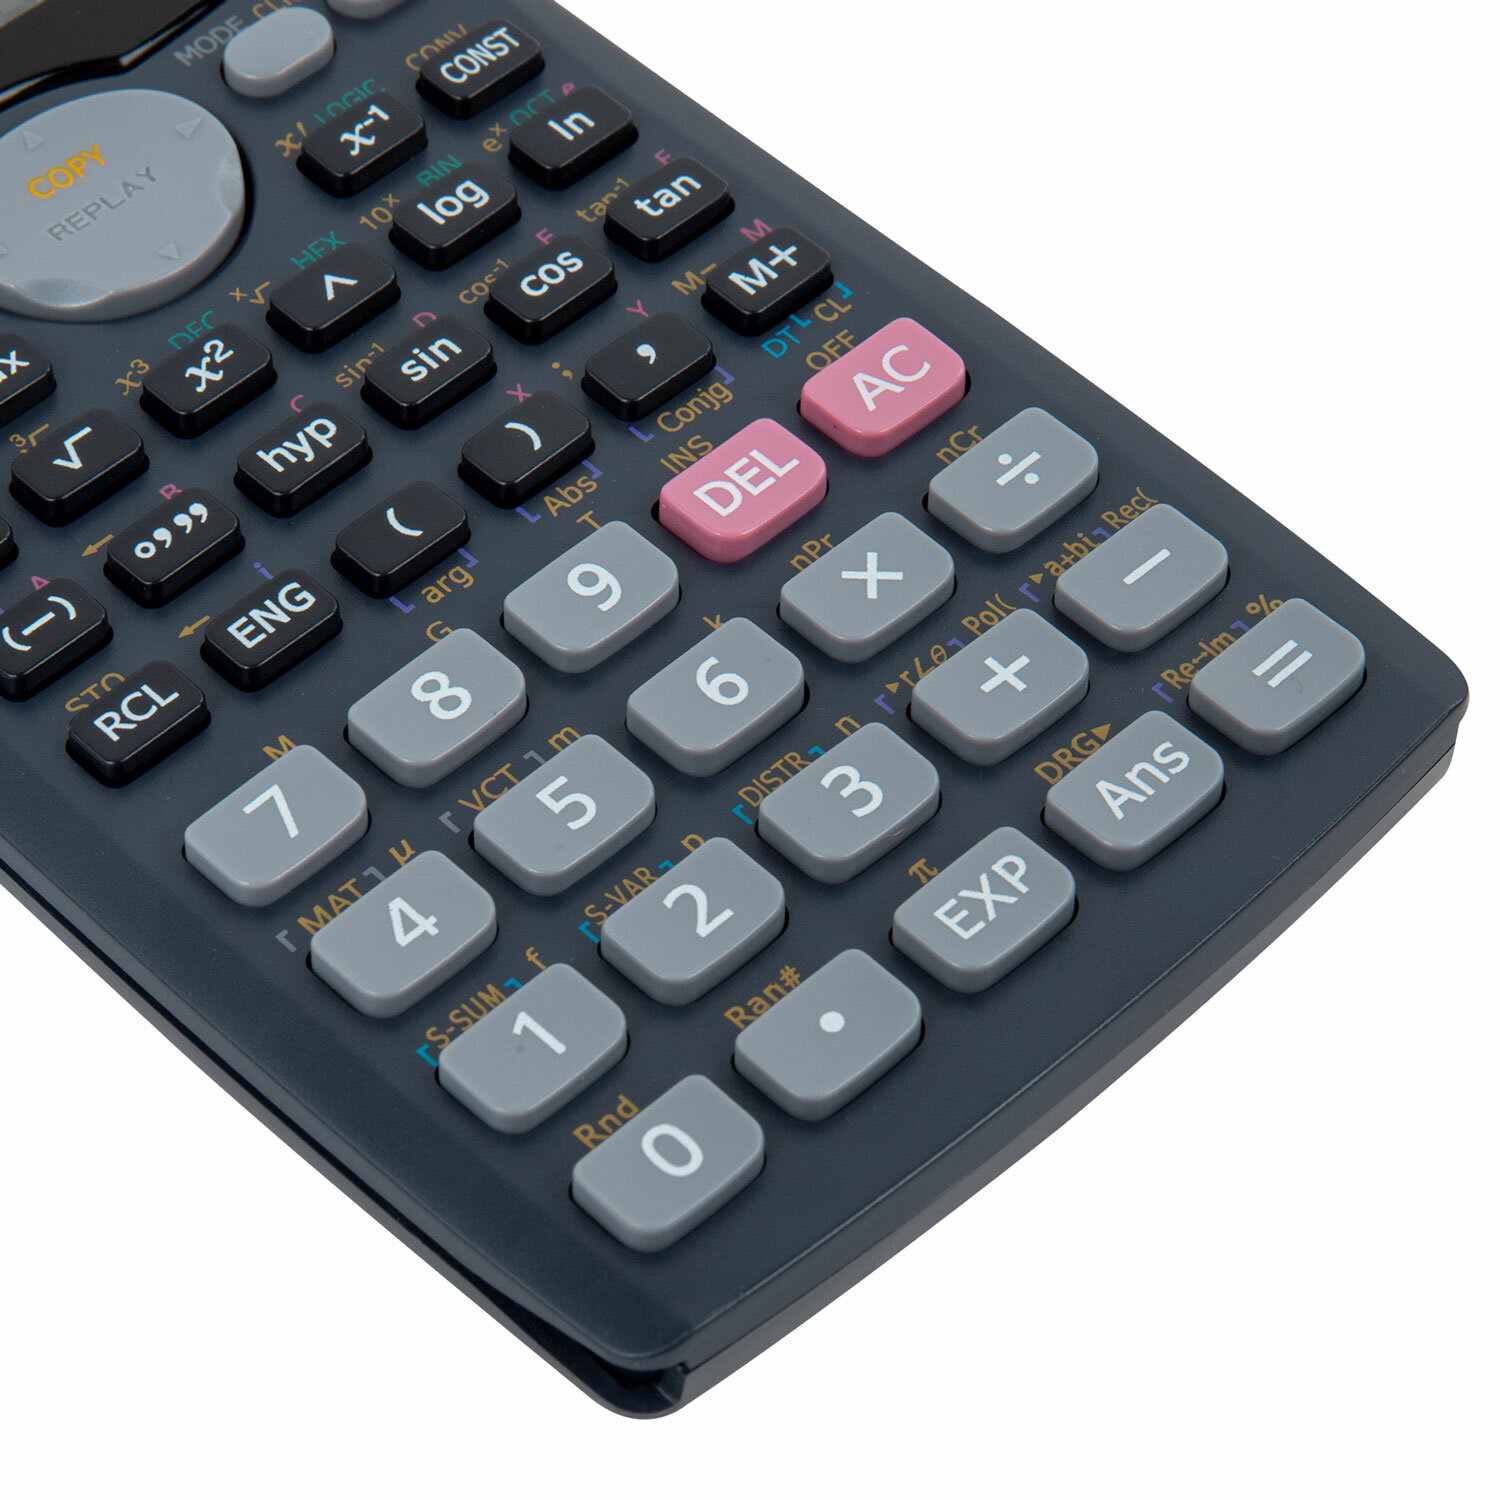 картинка Калькулятор инженерный, 12 разрядов, 15,7*8,2 см, двойное питание, 401 финкция, "SC-991MS", BRAUBERG, 271724 от магазина Альфанит в Кунгуре